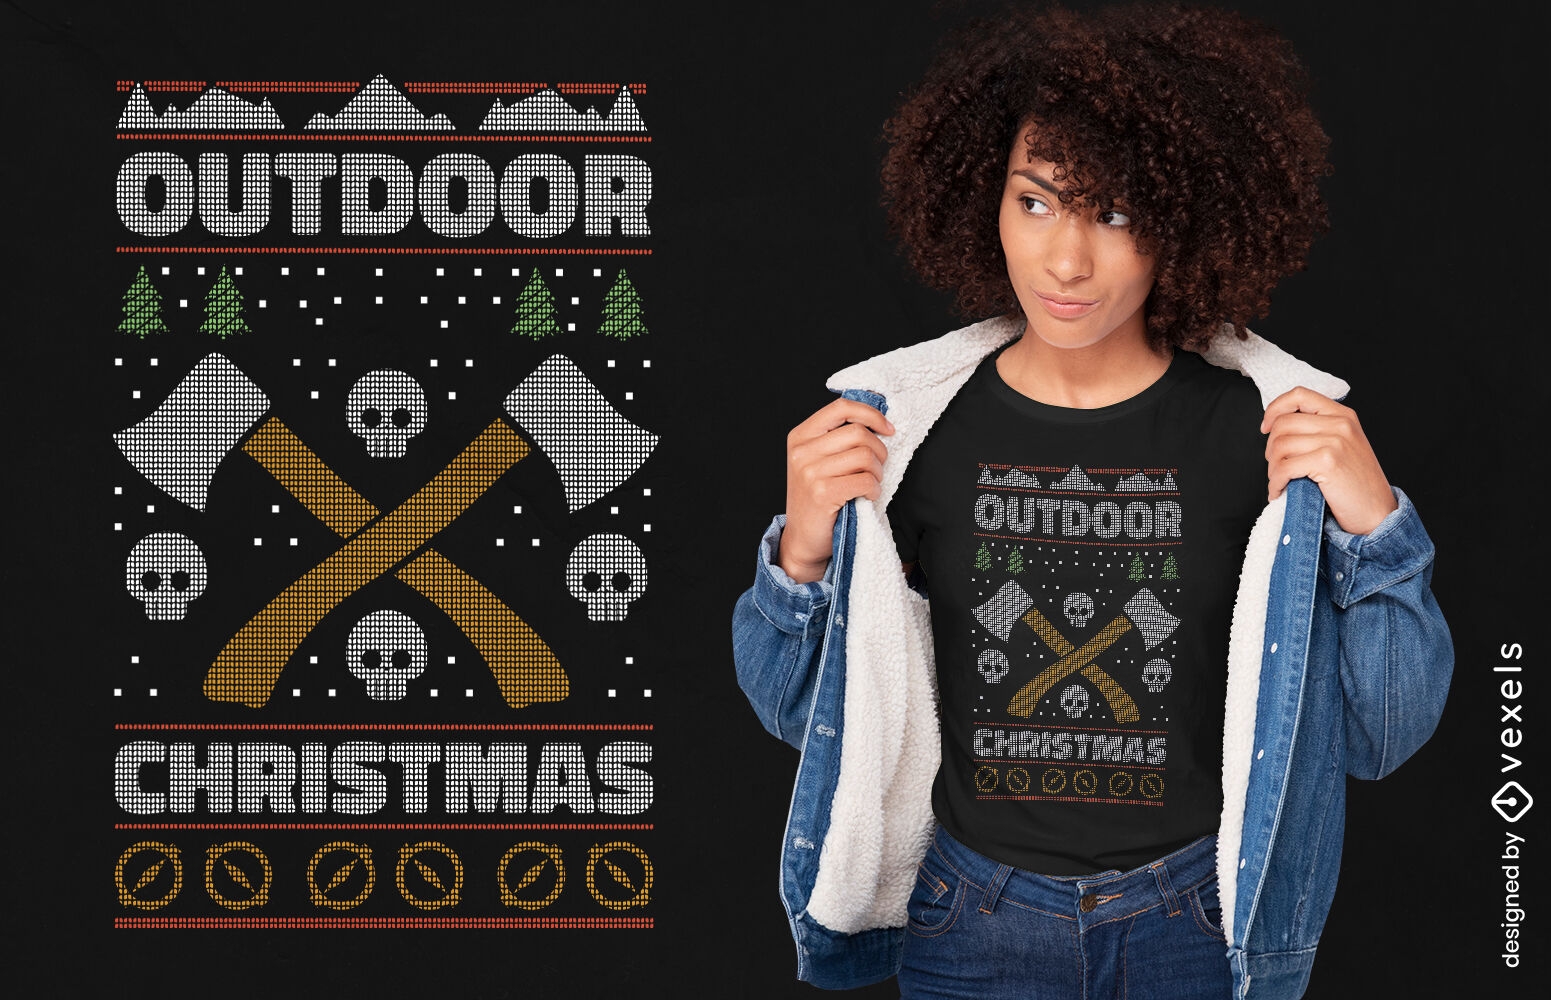 Outdoor-Weihnachts-T-Shirt-Design